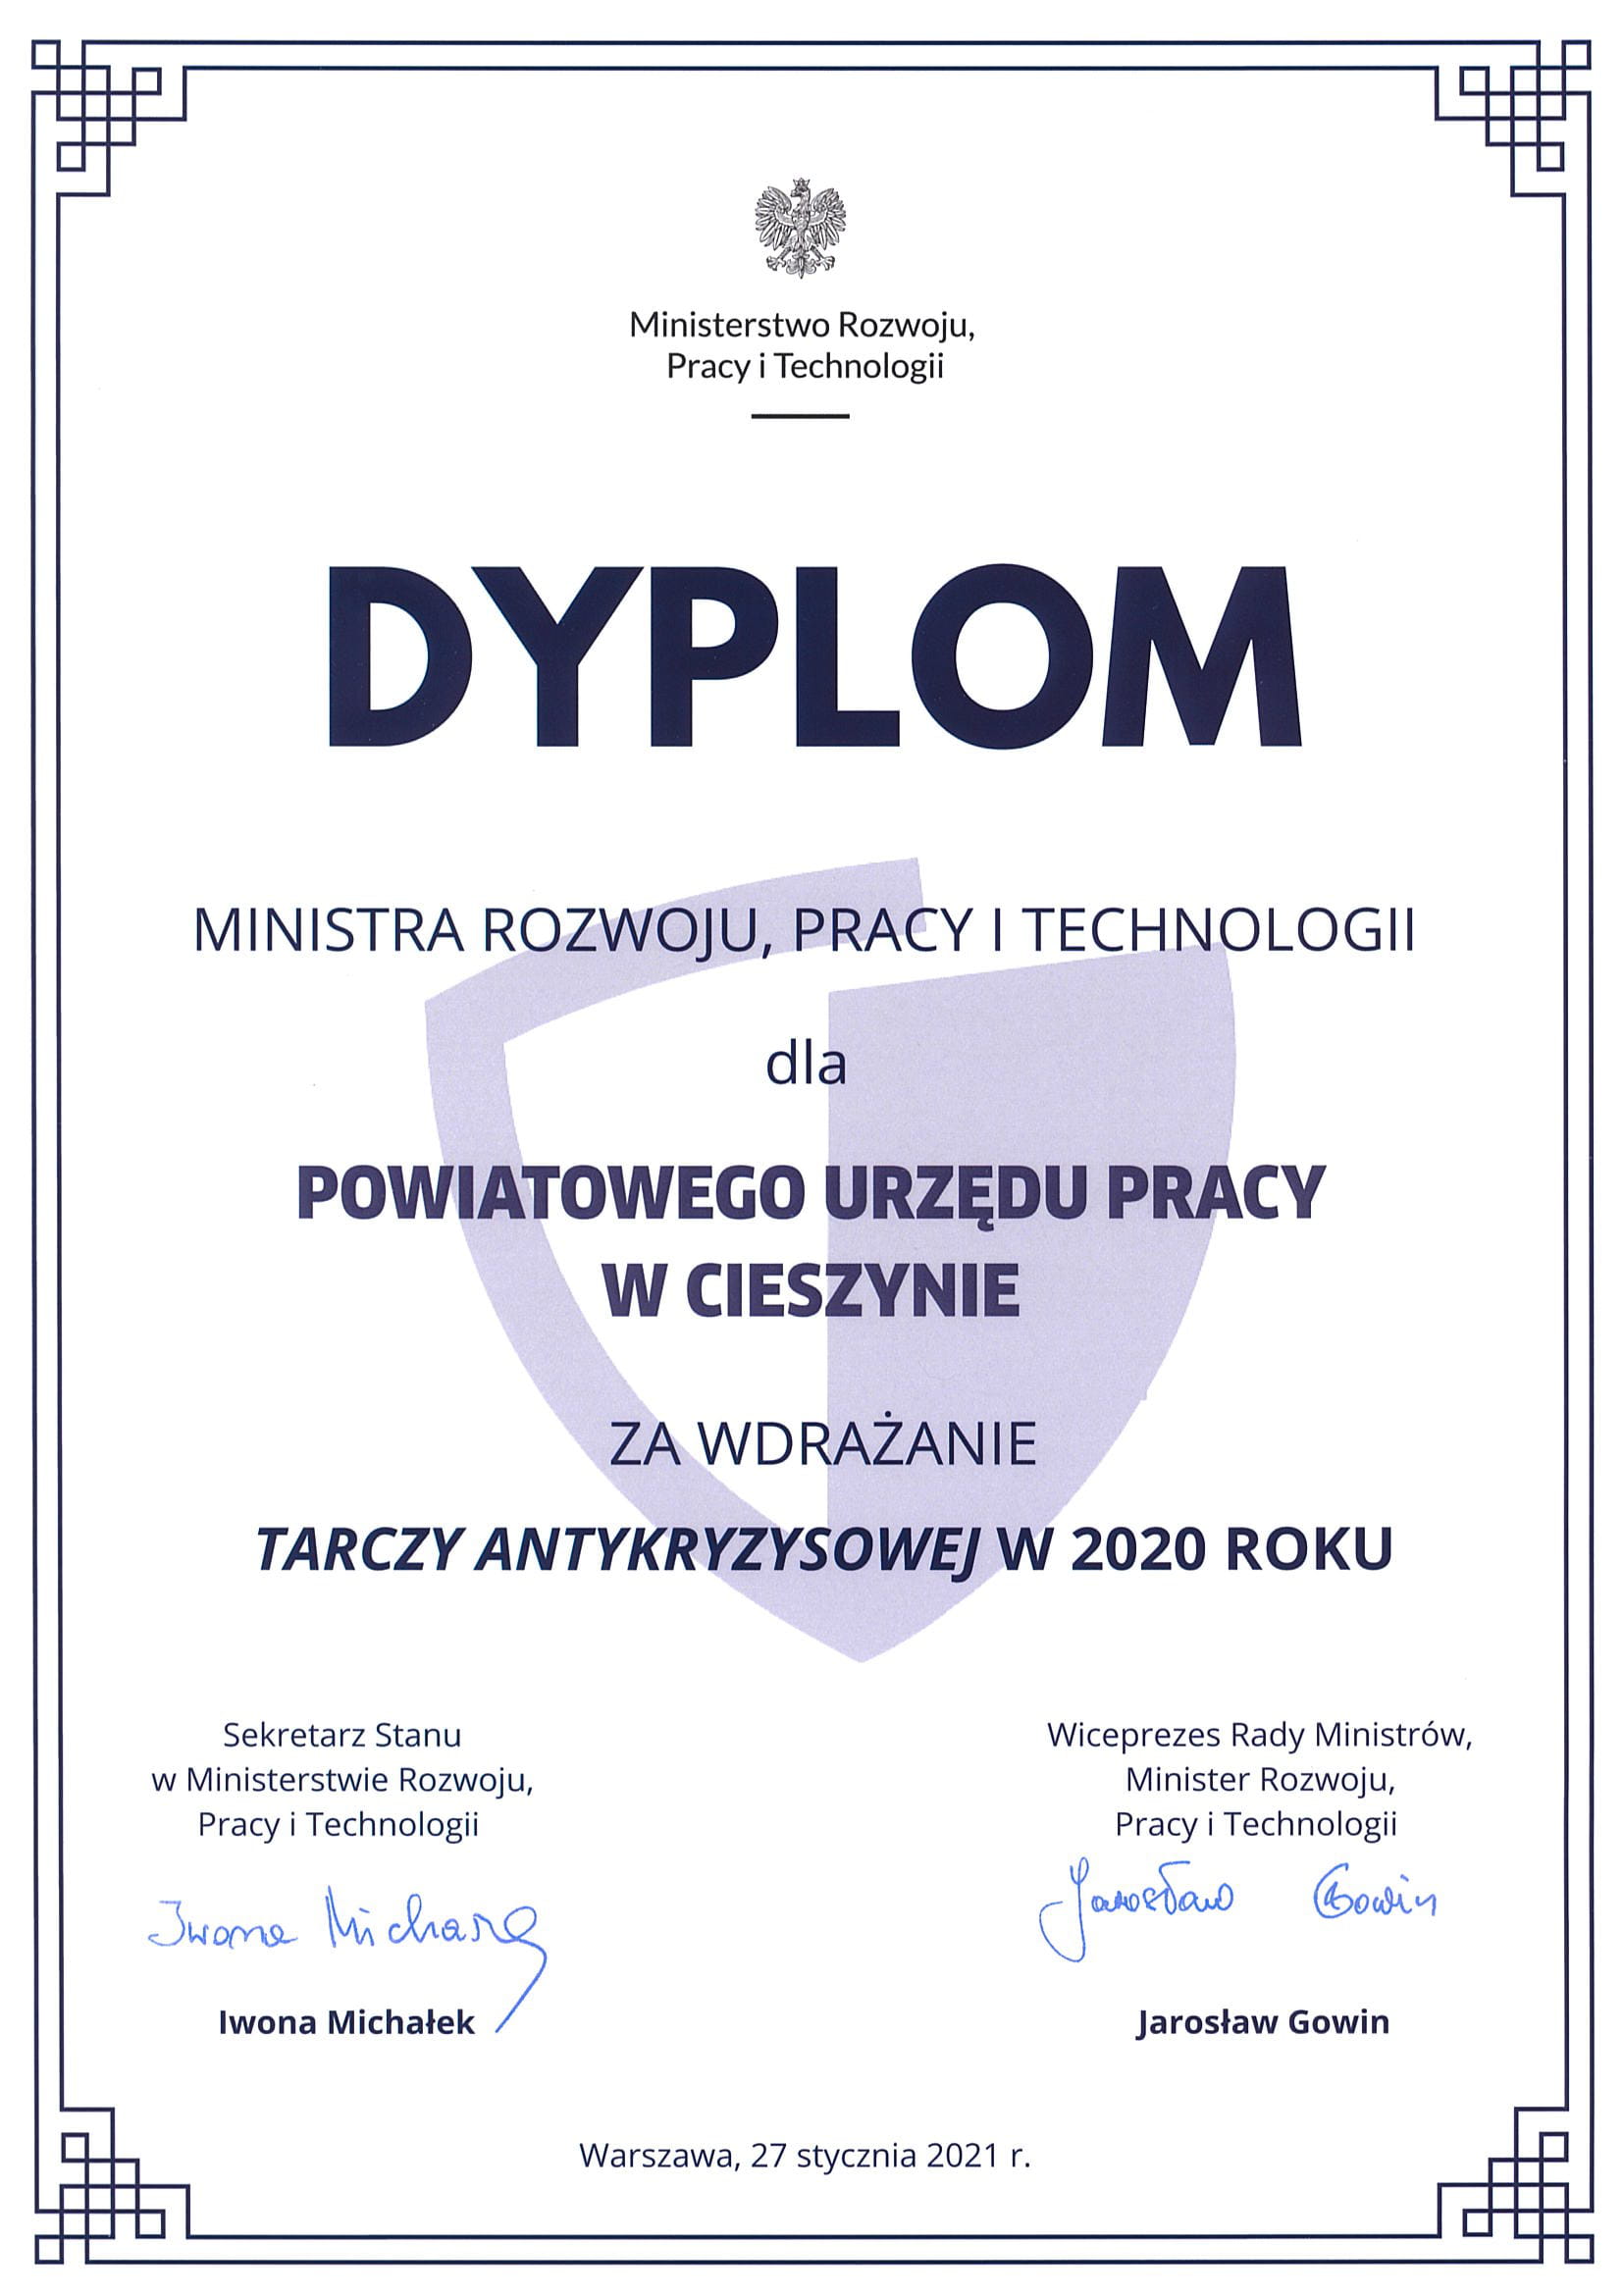 Dyplom Ministra Rozwoju, Pracy i Technologii dla Powiatowego Urzędu Pracy w Cieszynie